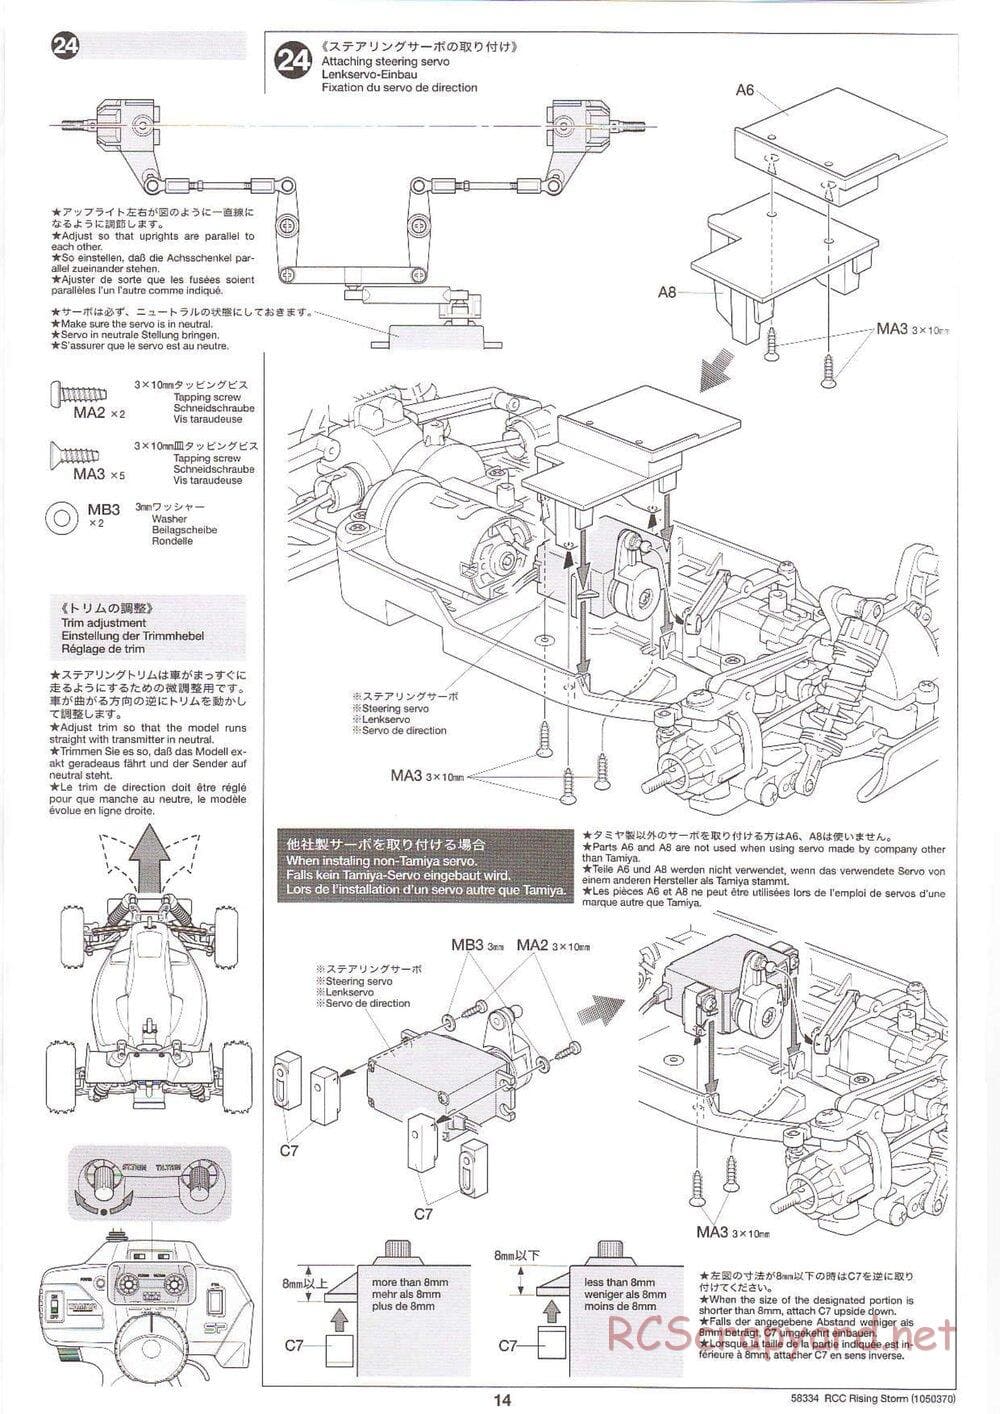 Tamiya - Rising Storm Chassis - Manual - Page 14